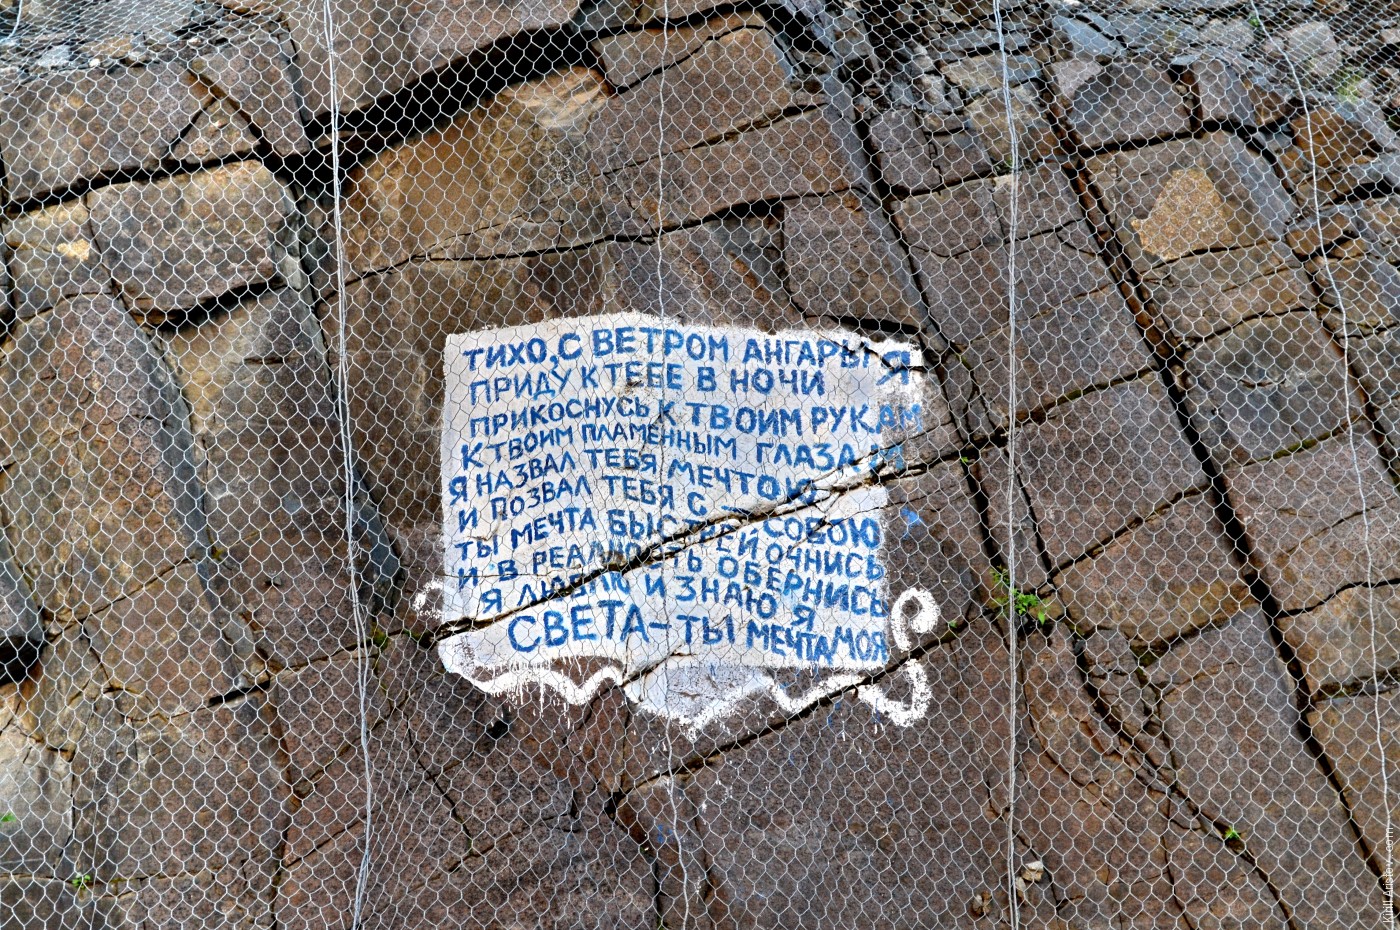 Надпись на скале рядом с плотиной Богучанской ГЭС, Location: Плотина Богучанской ГЭС на реке Ангара.